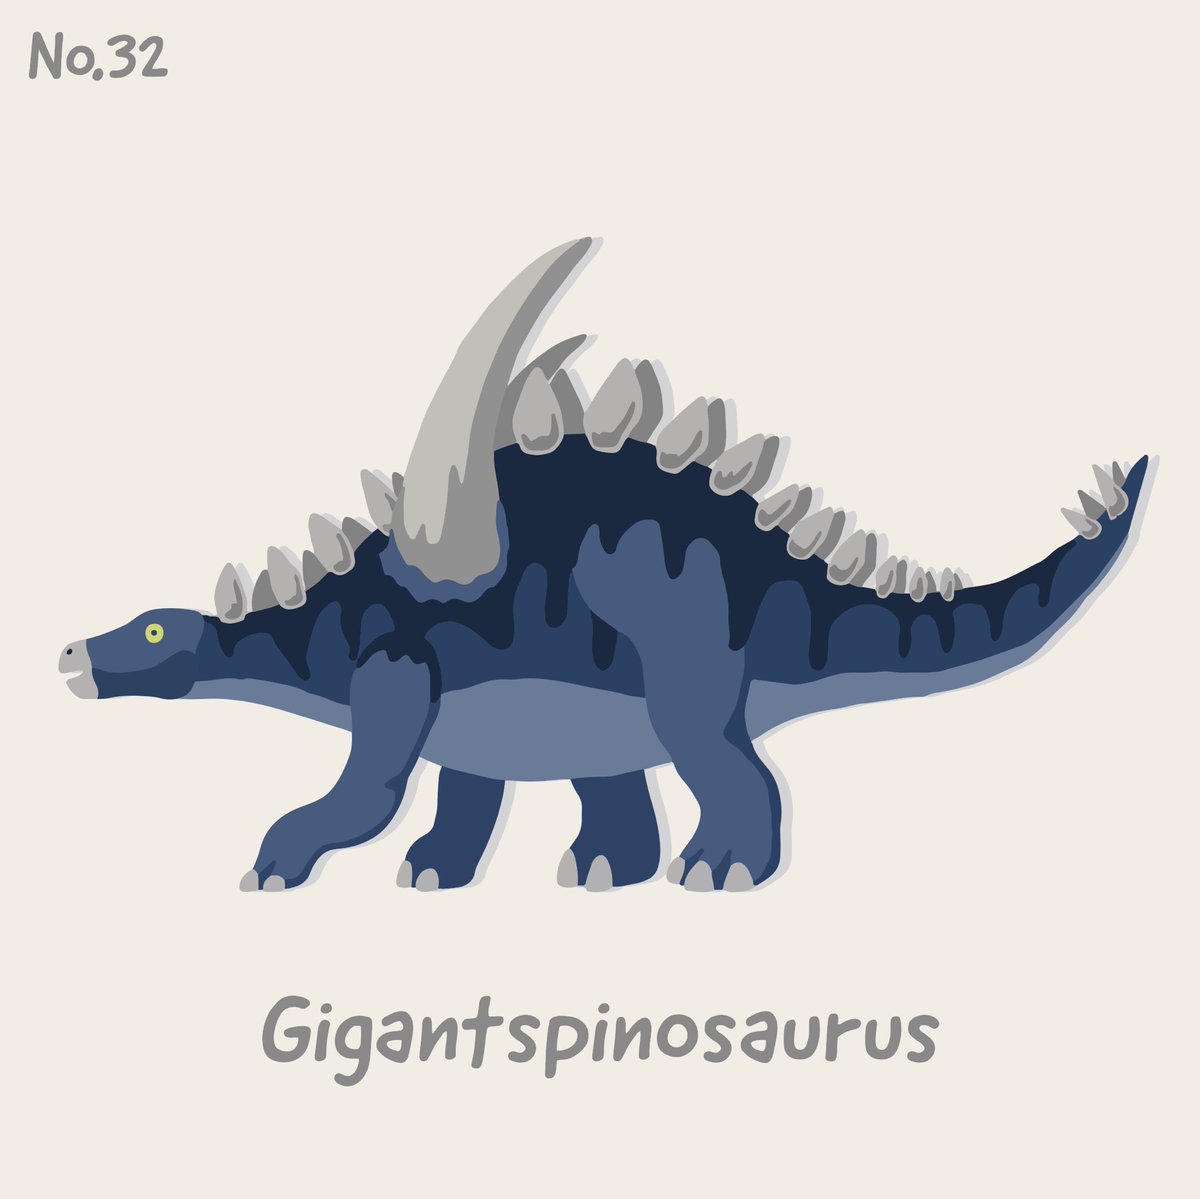 ケータ 古生物イラスト グッズデザイン No 32 ギガントスピノサウルス そらギガントで スピノサウルスなんだから めちゃすごいの来ると思うでわないか こいつはこいつでかっこいいですけどね ギガントスピノサウルス